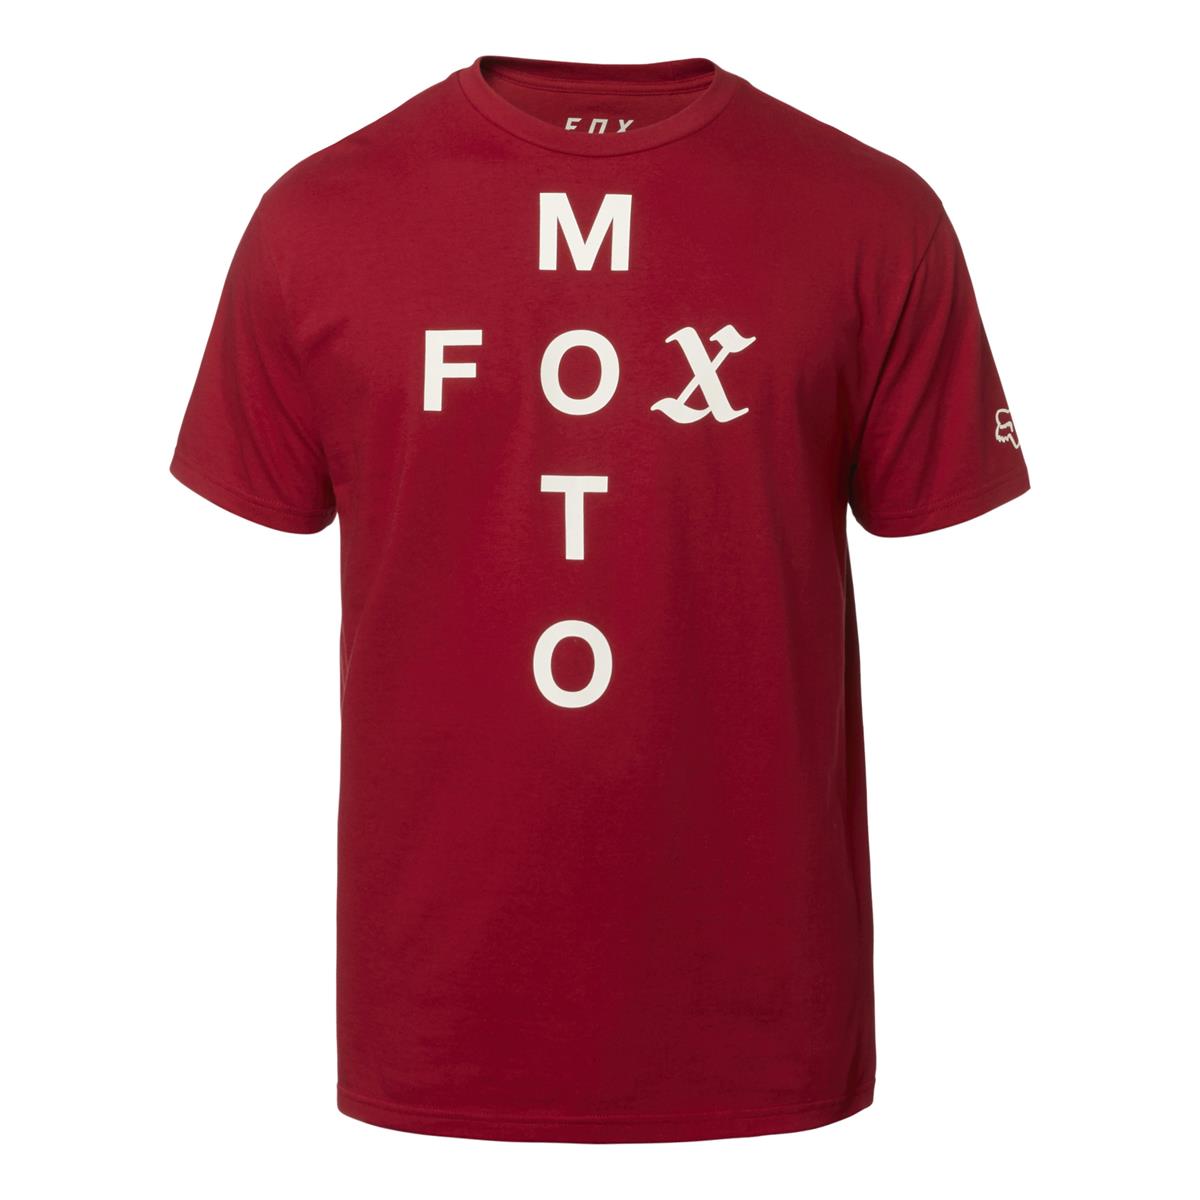 Fox T-Shirt Moto Cross Cardinal Red